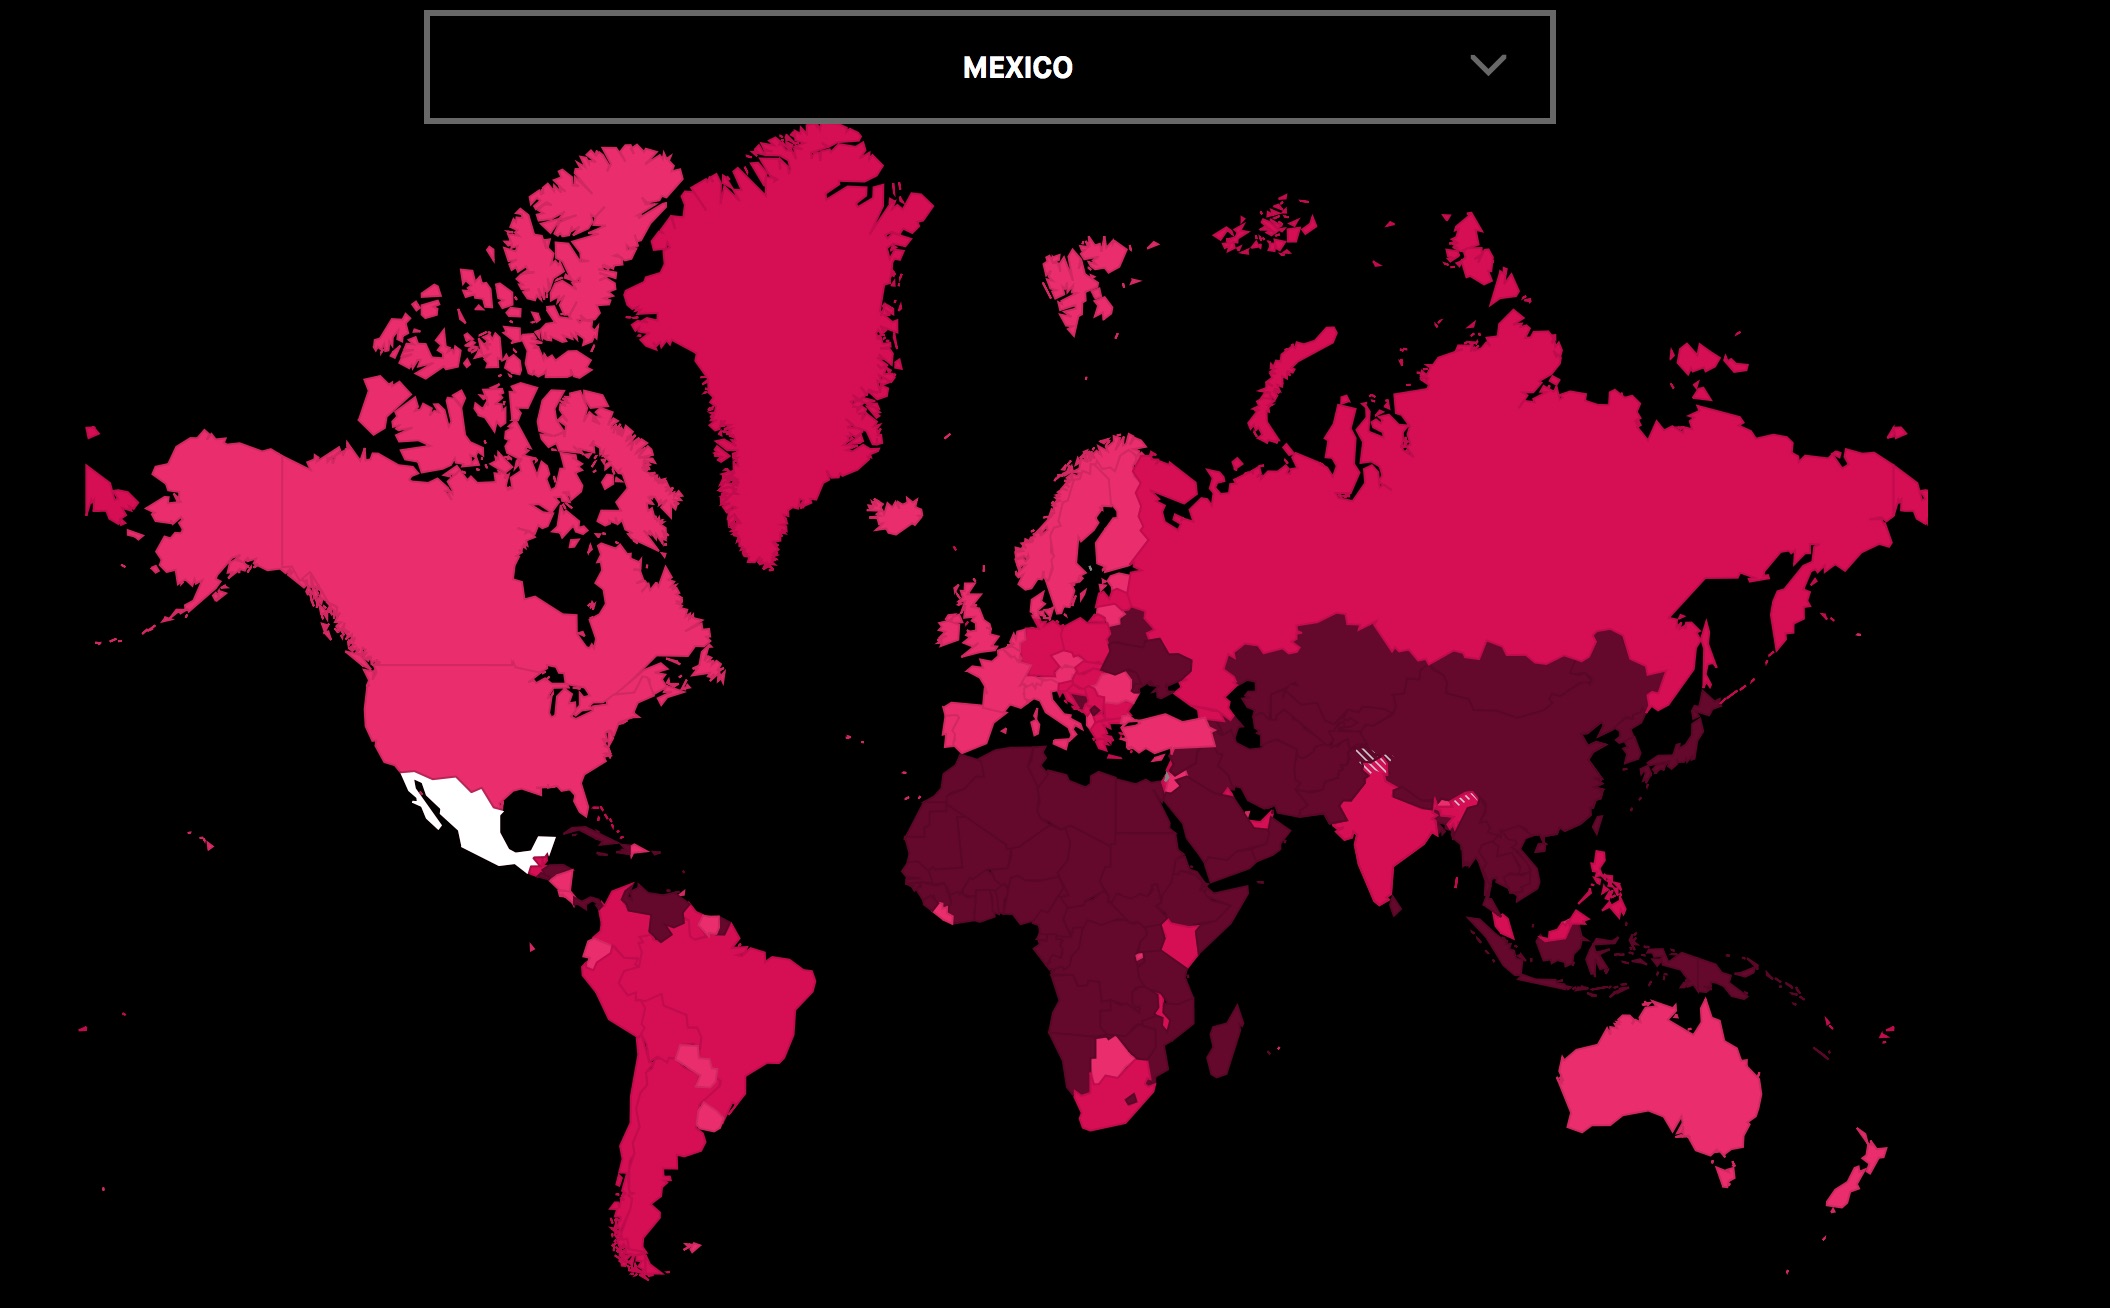 Mapa mundi de la campaña He for She de Naciones Unidas, donde se resalta México